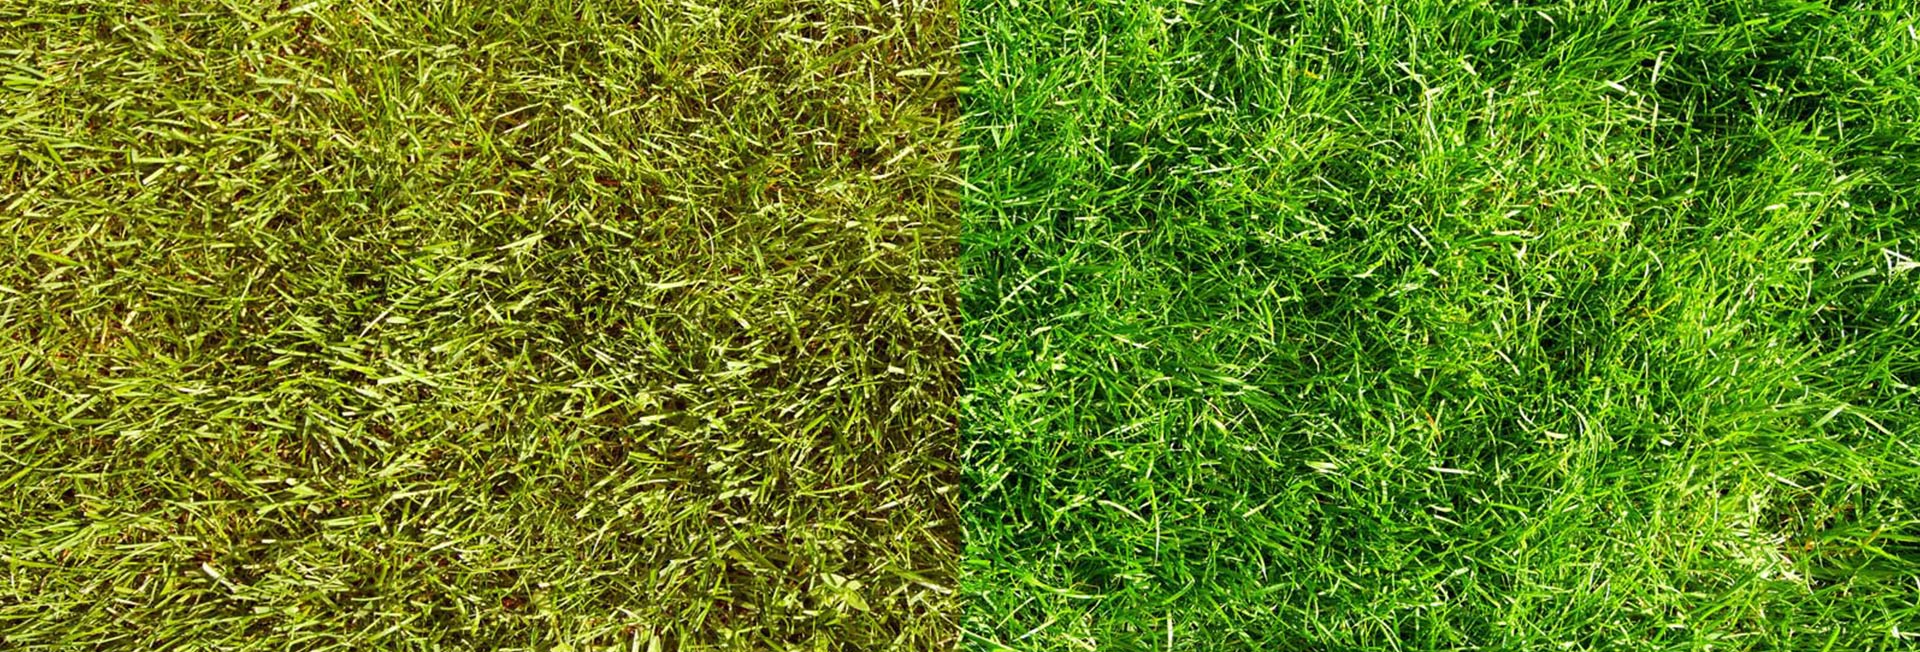 Come ottenere erba verde: Suggerimenti sulla manutenzione del prato